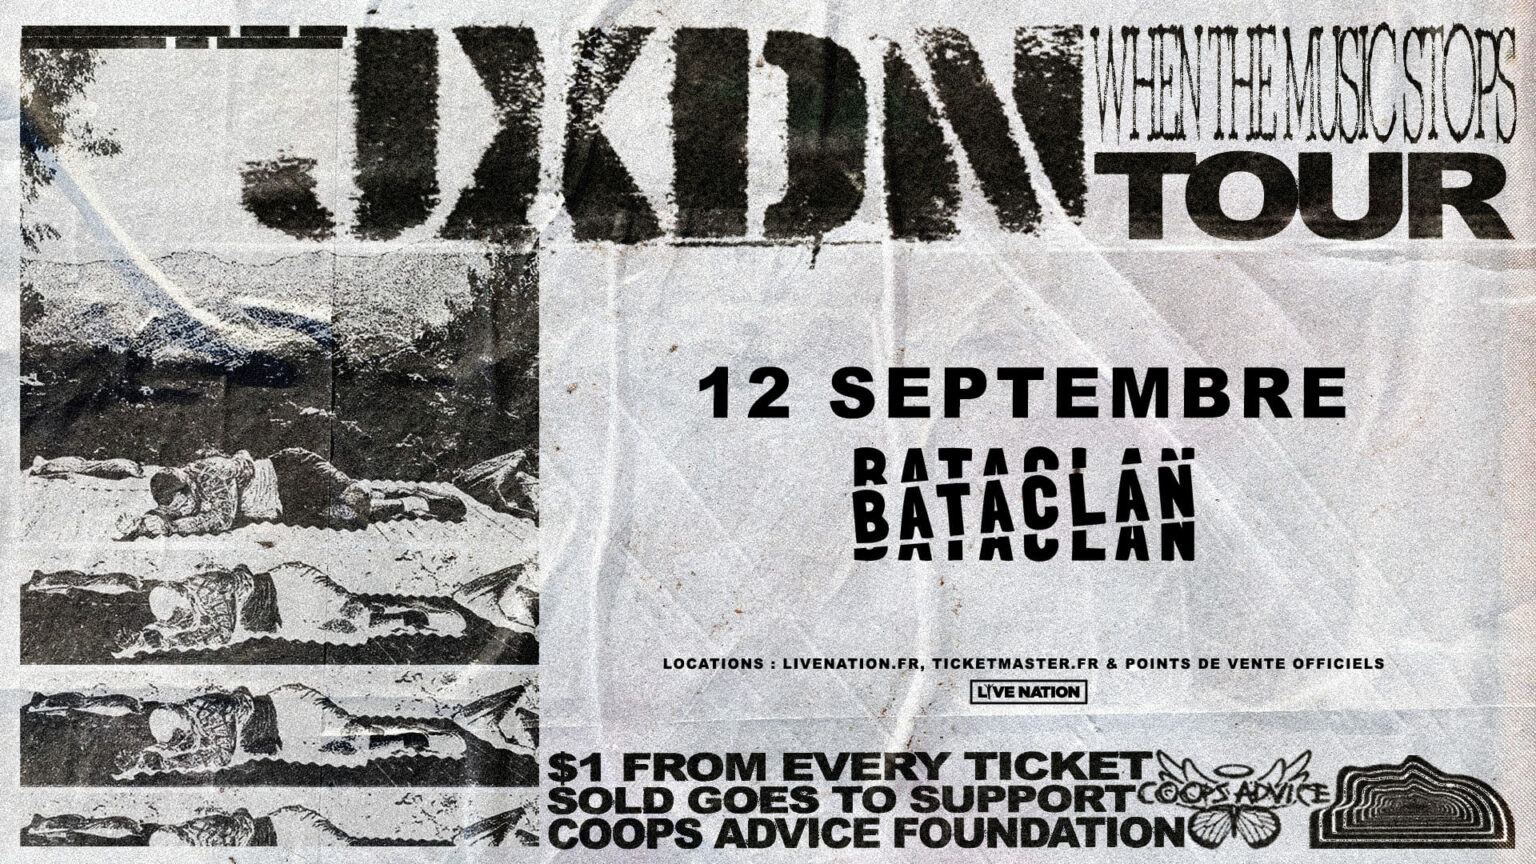 Jxdn in der Bataclan Tickets